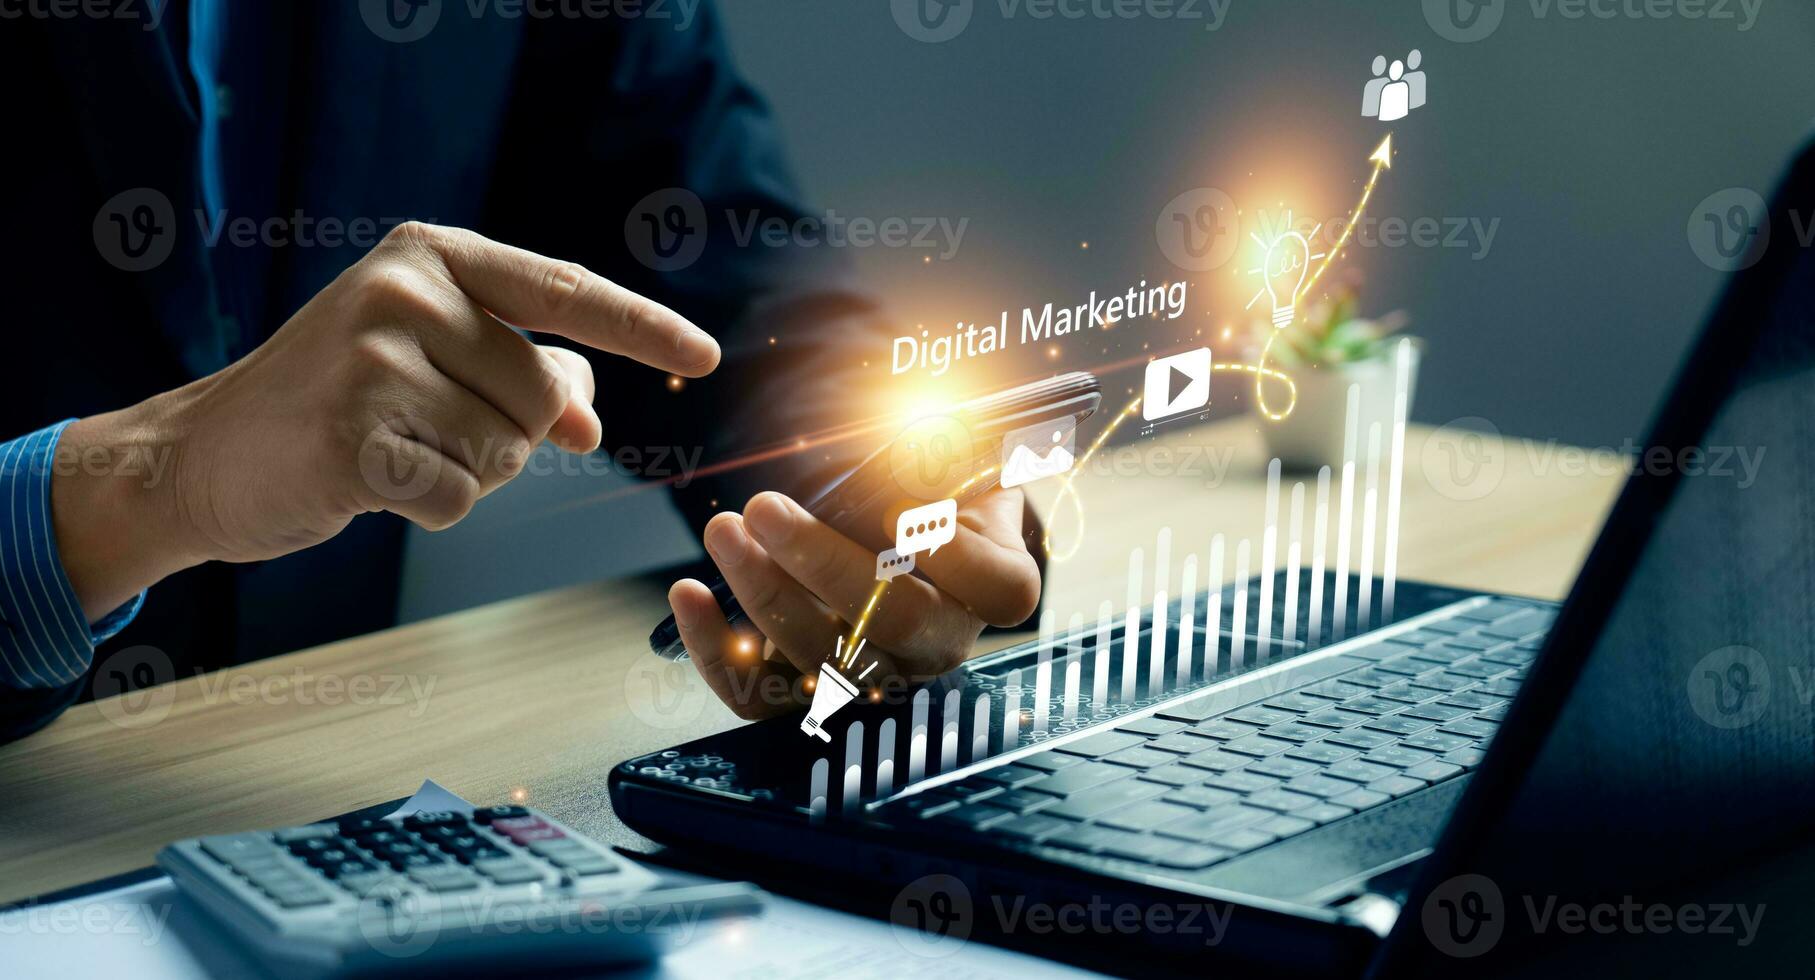 digital márketing comercio en línea rebaja concepto, promoción de productos o servicios mediante digital canales buscar motor, social medios de comunicación, correo electrónico, sitio web, digital márketing estrategias y objetivos. seo ppc foto